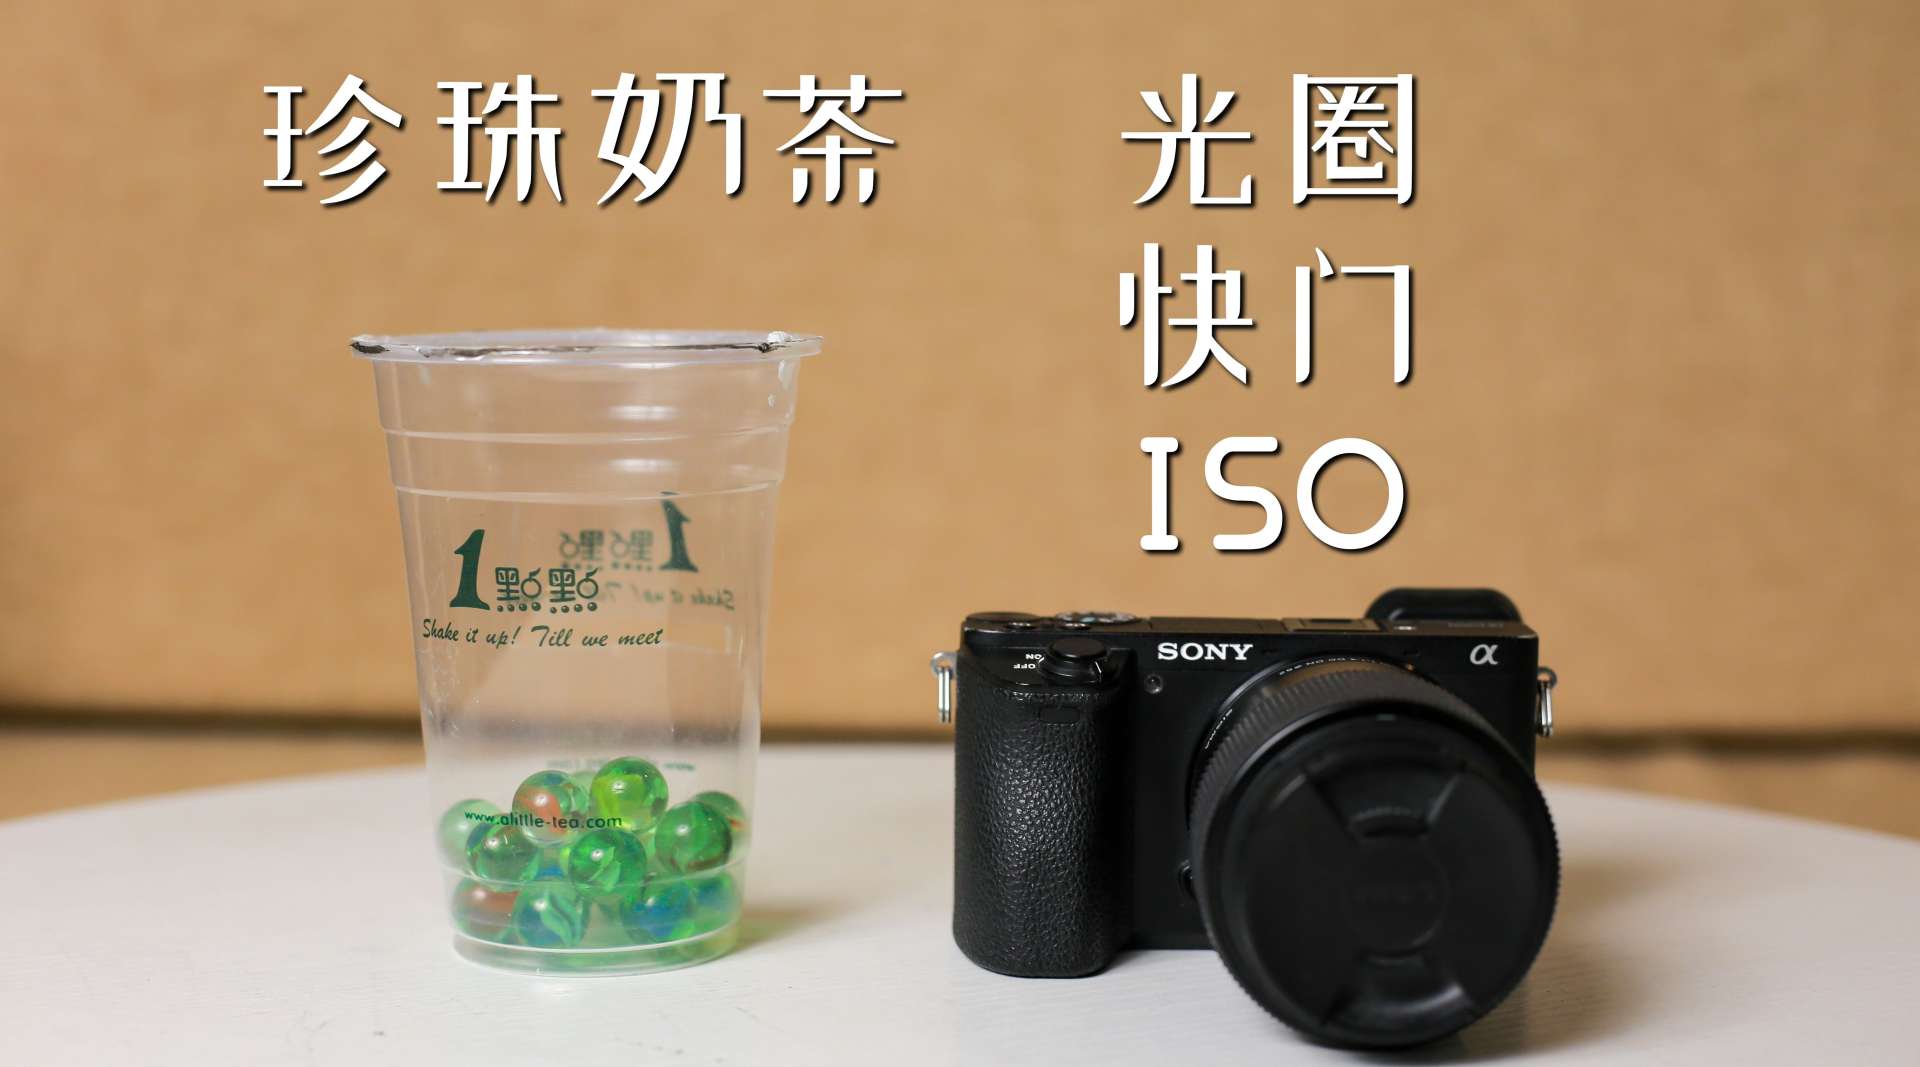 【相机入门01】用珍珠奶茶理解光圈快门ISO，5分钟学会曝光